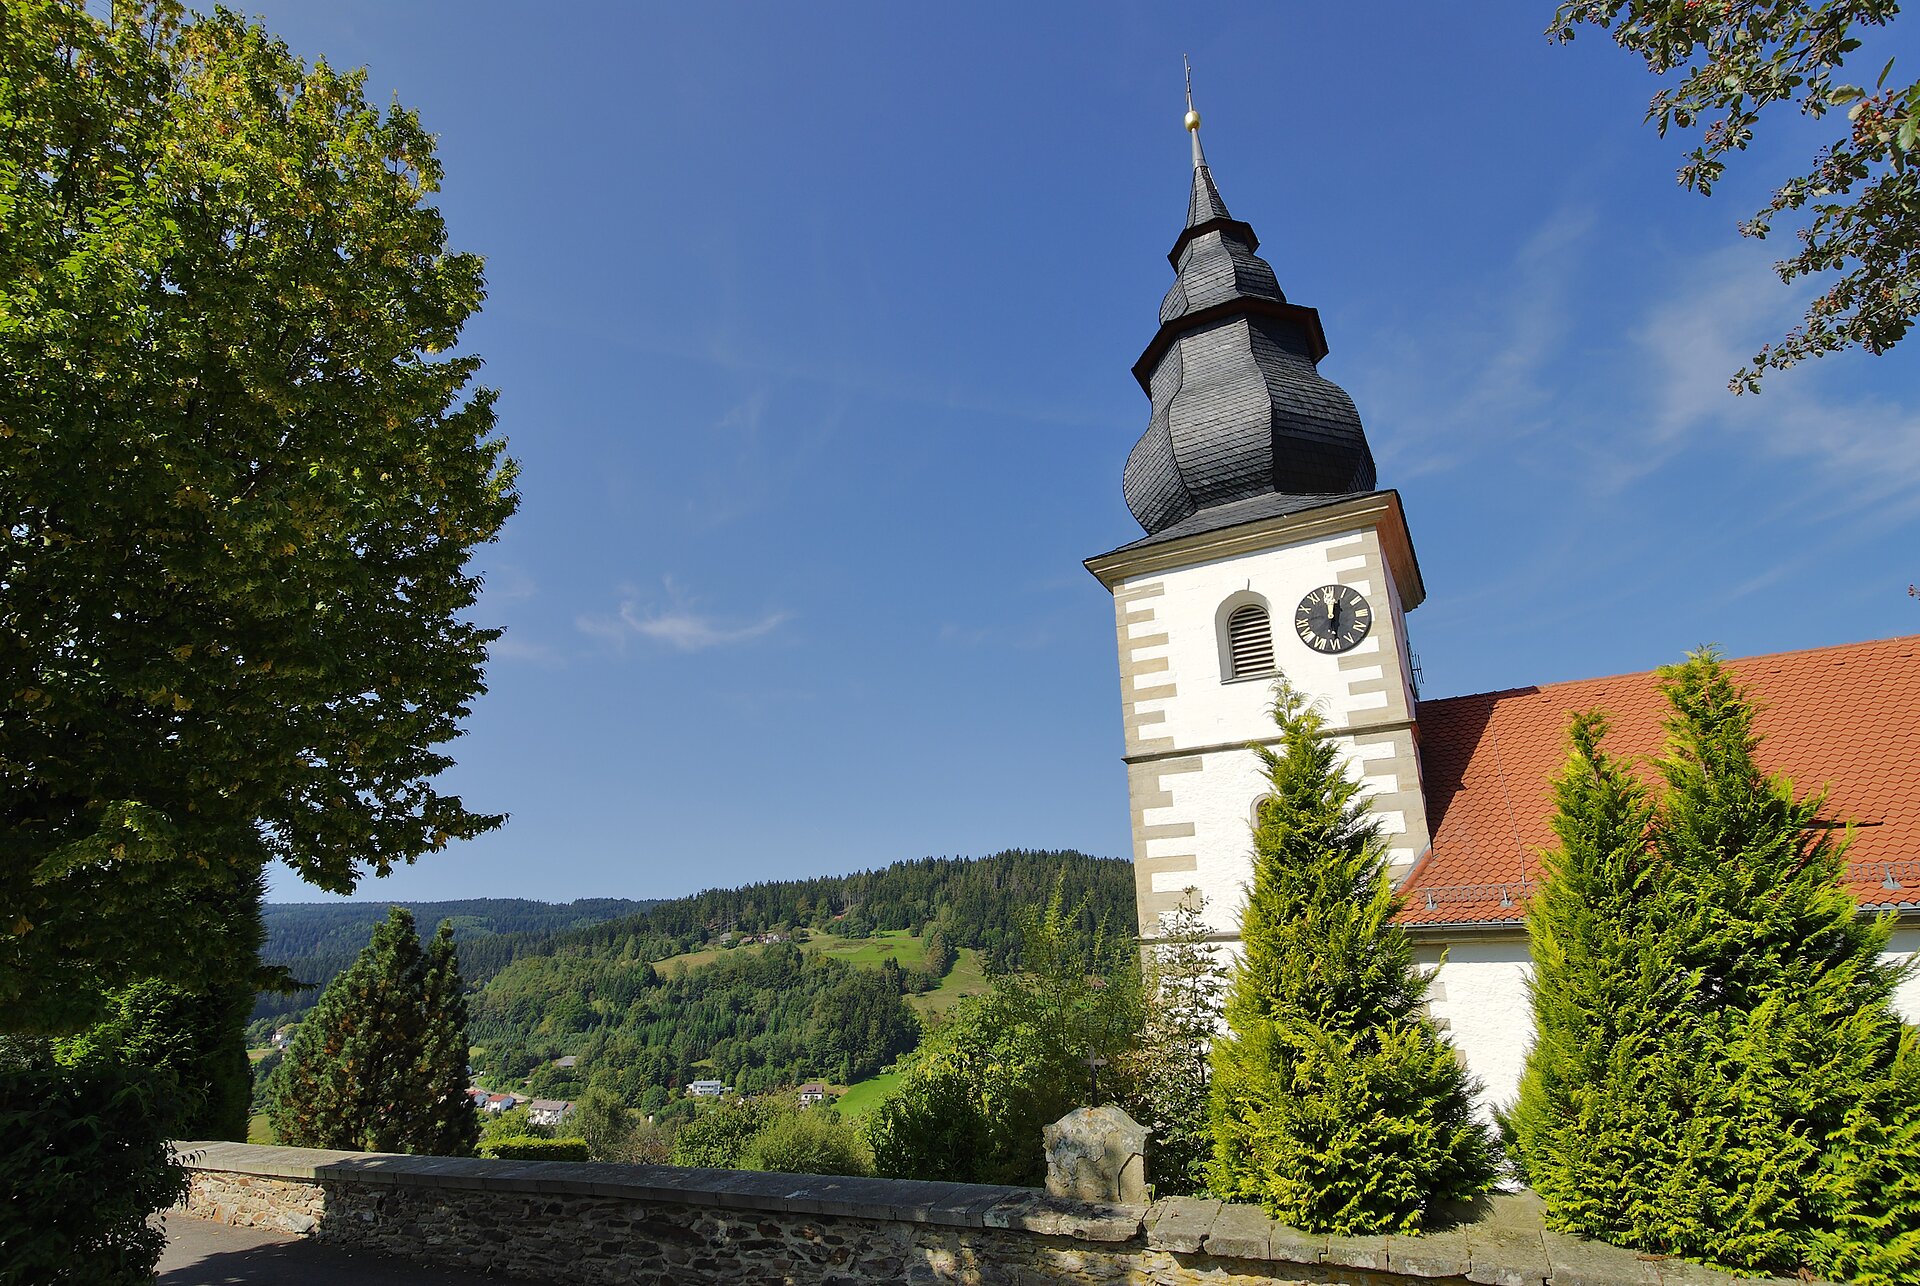 Blick auf die Kirche, im Hintergrund Wald und blauer Himmel